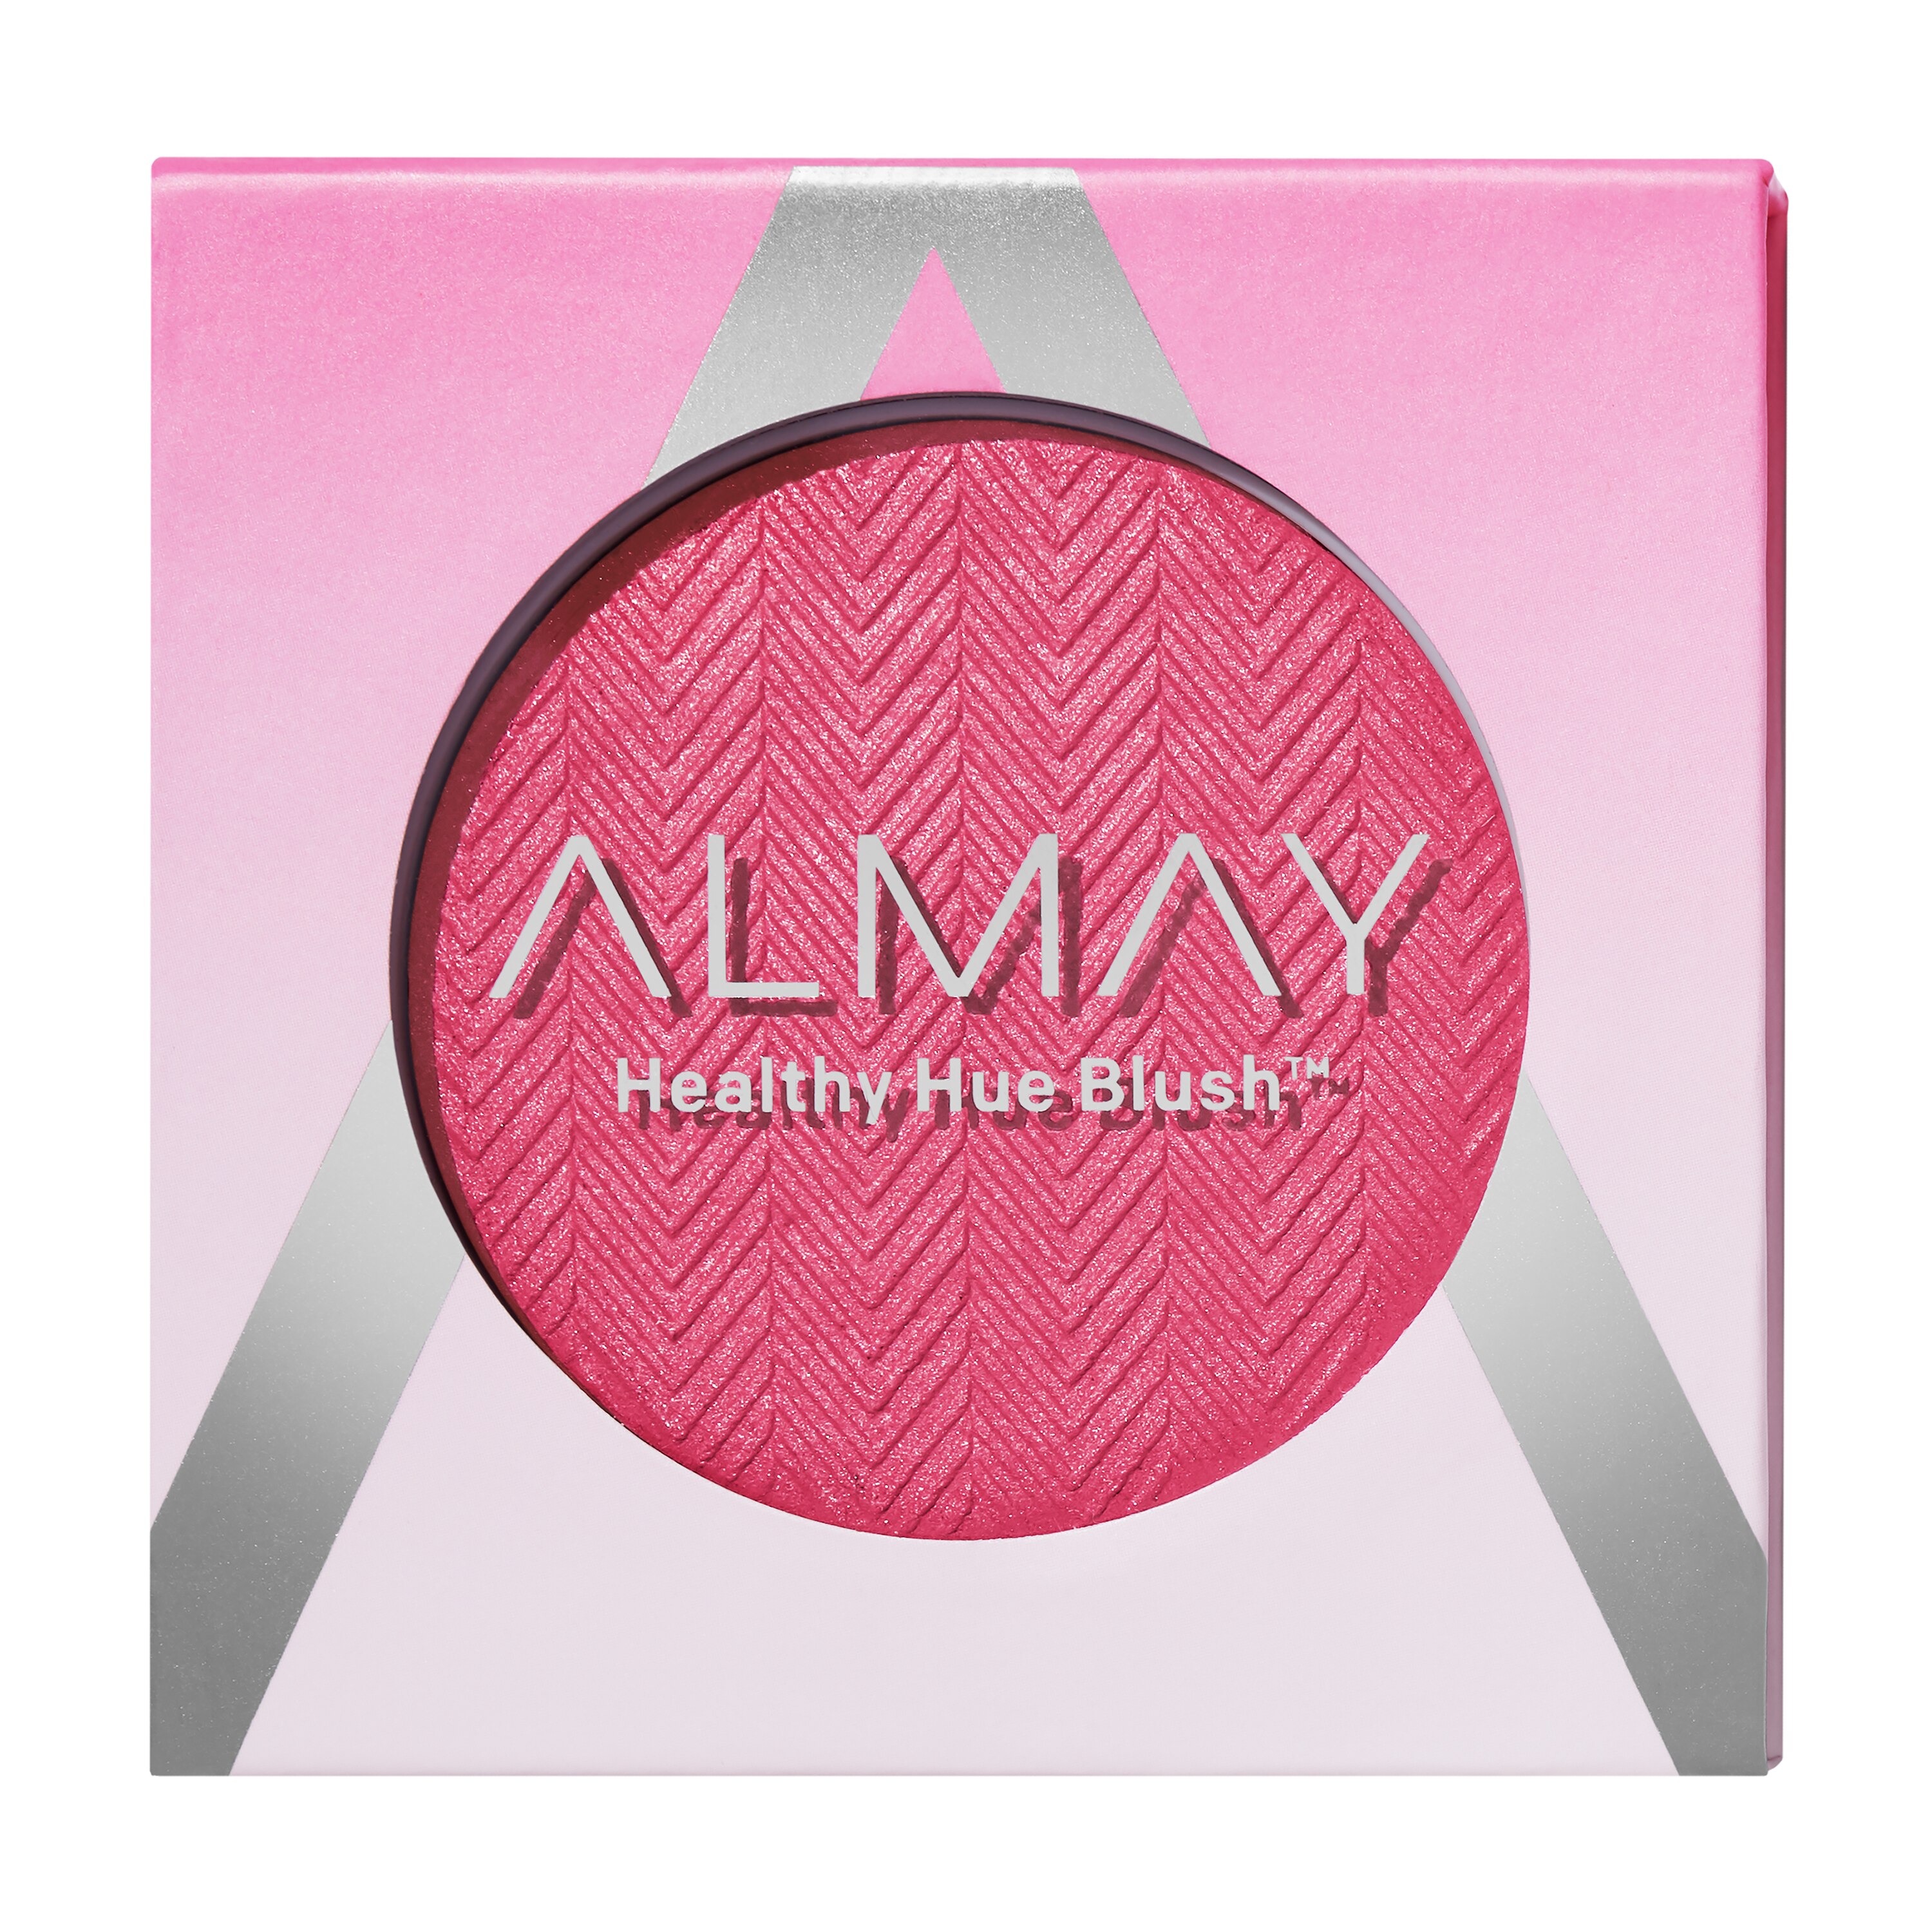 Almay Healthy Hue Blush, Pink Flush , CVS